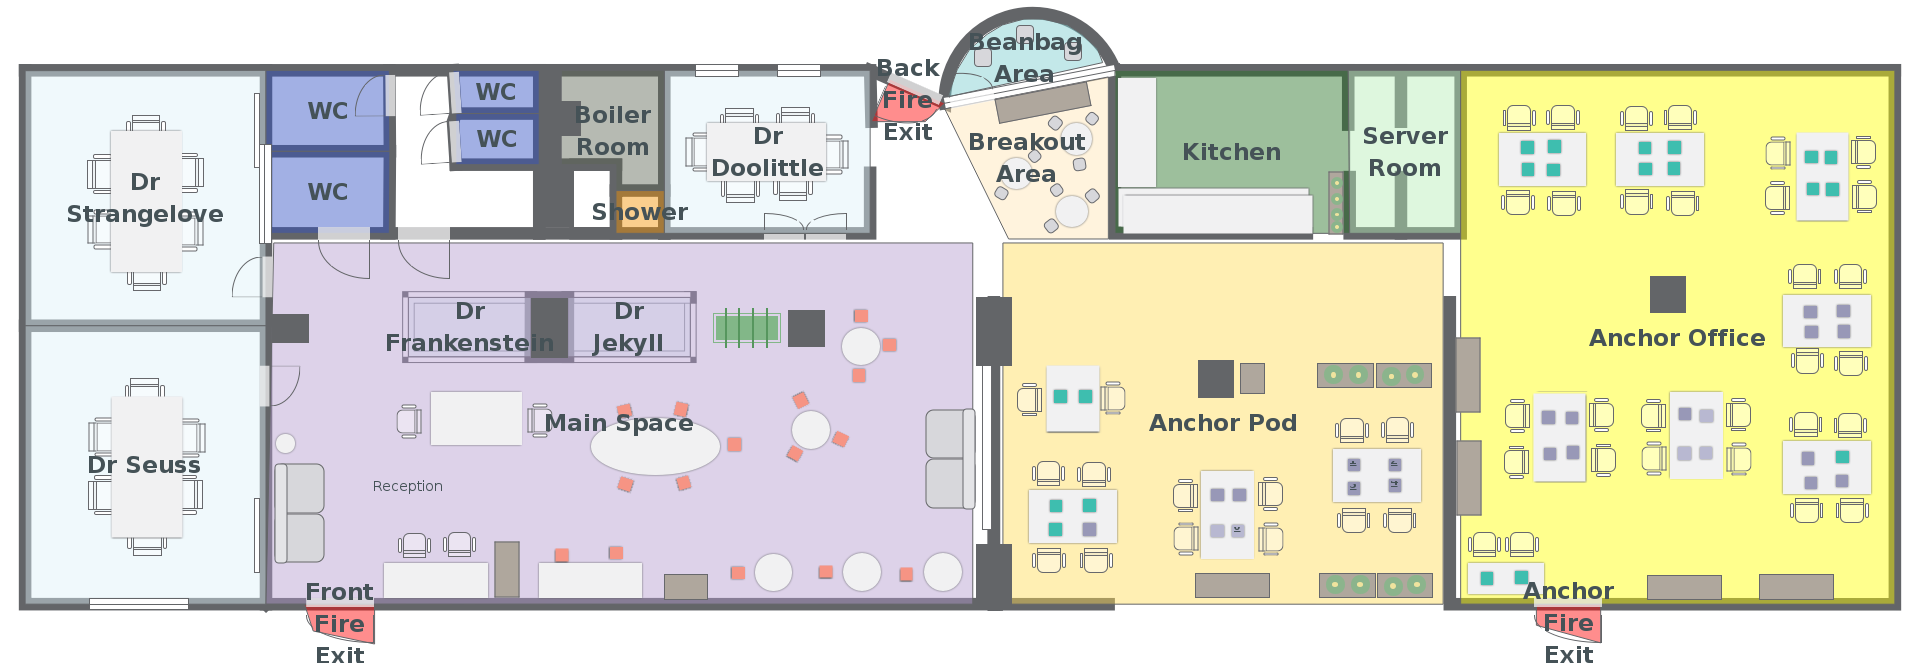 Floor plan (office rnd).png